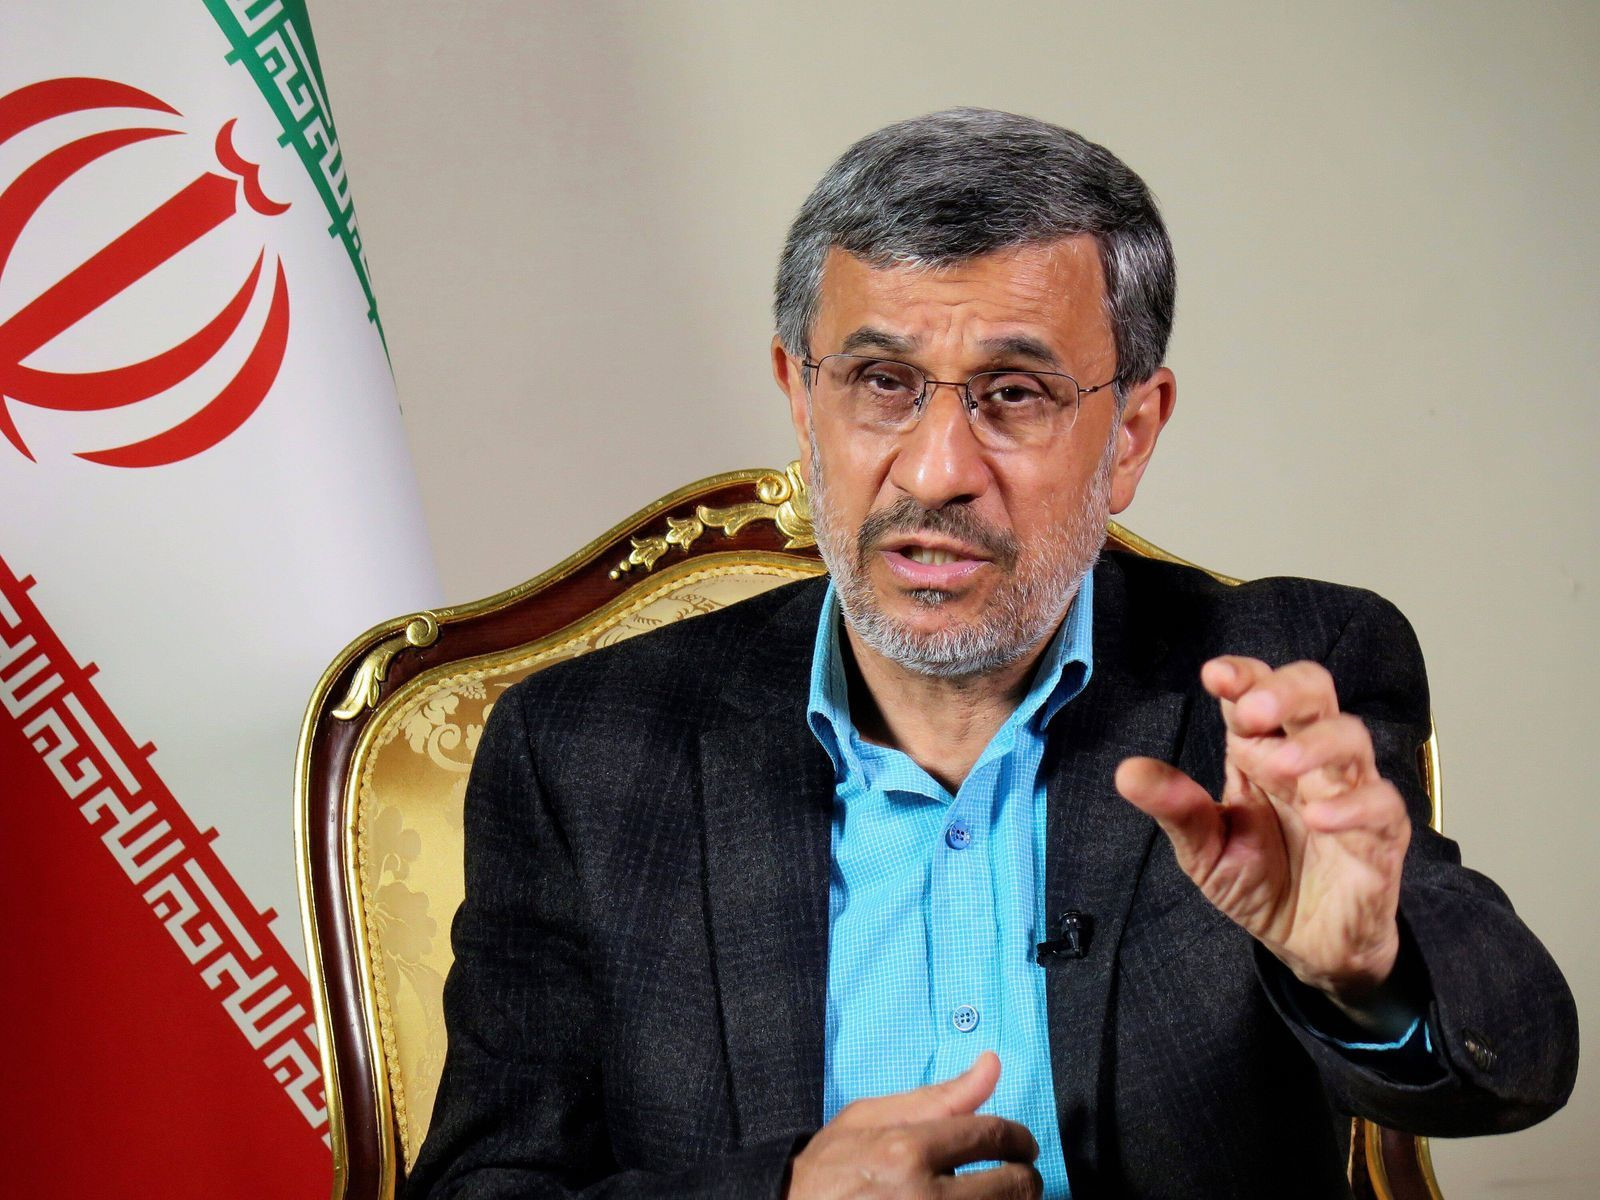 Cumhurbaşkanı adaylığı reddedilen isimlerden birisi de Eski İran Cumhurbaşkanı Mahmut Ahmedinejat oldu. 